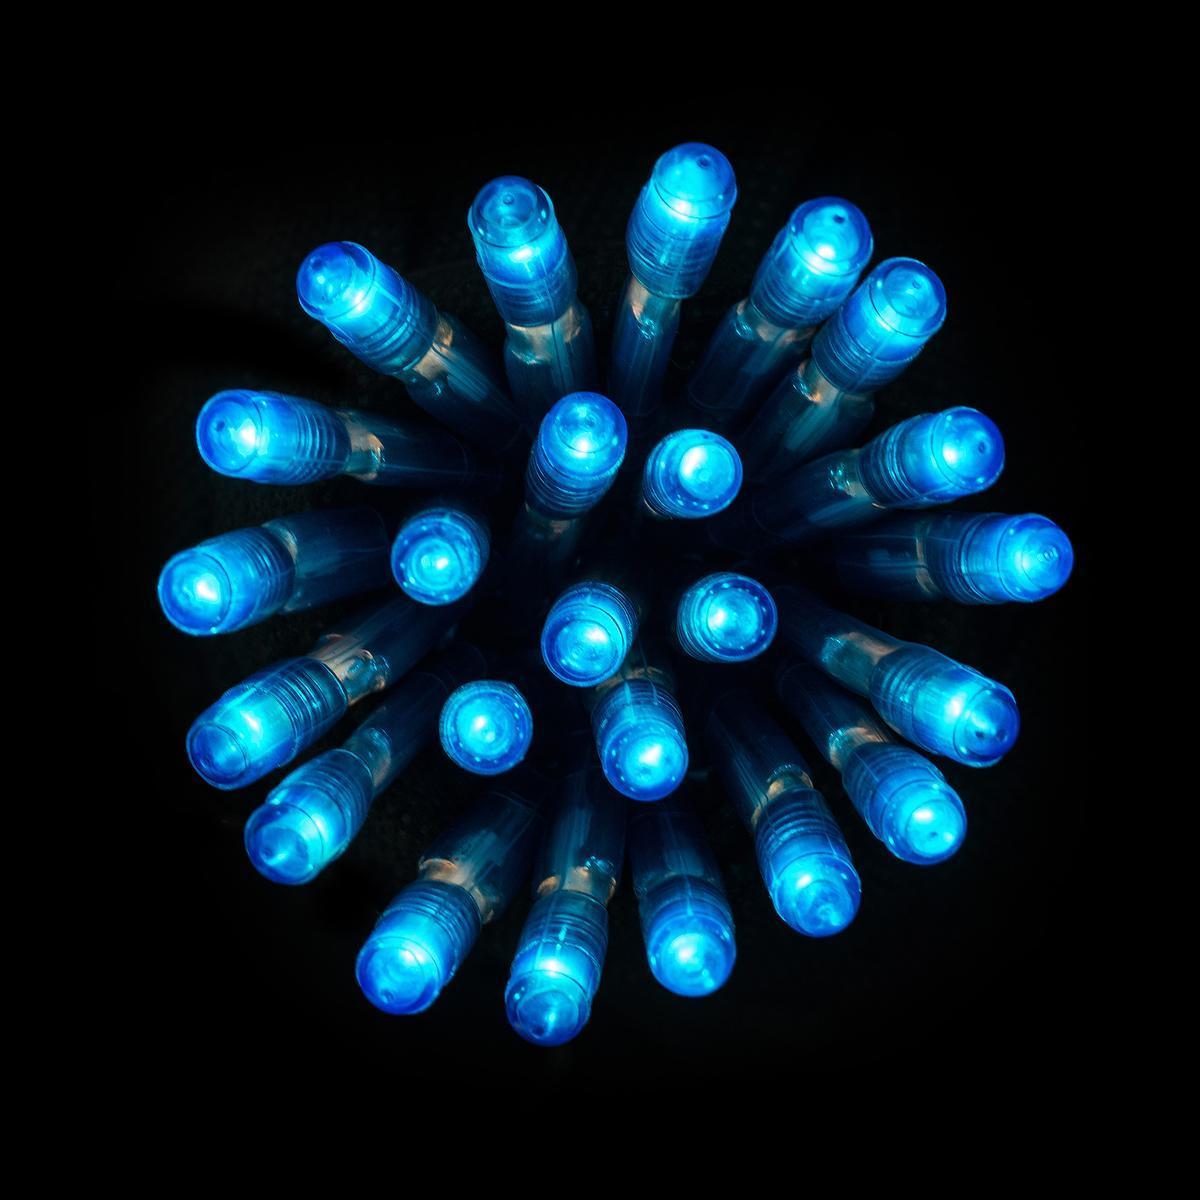 Guirlande électrique 100 led - Bleu